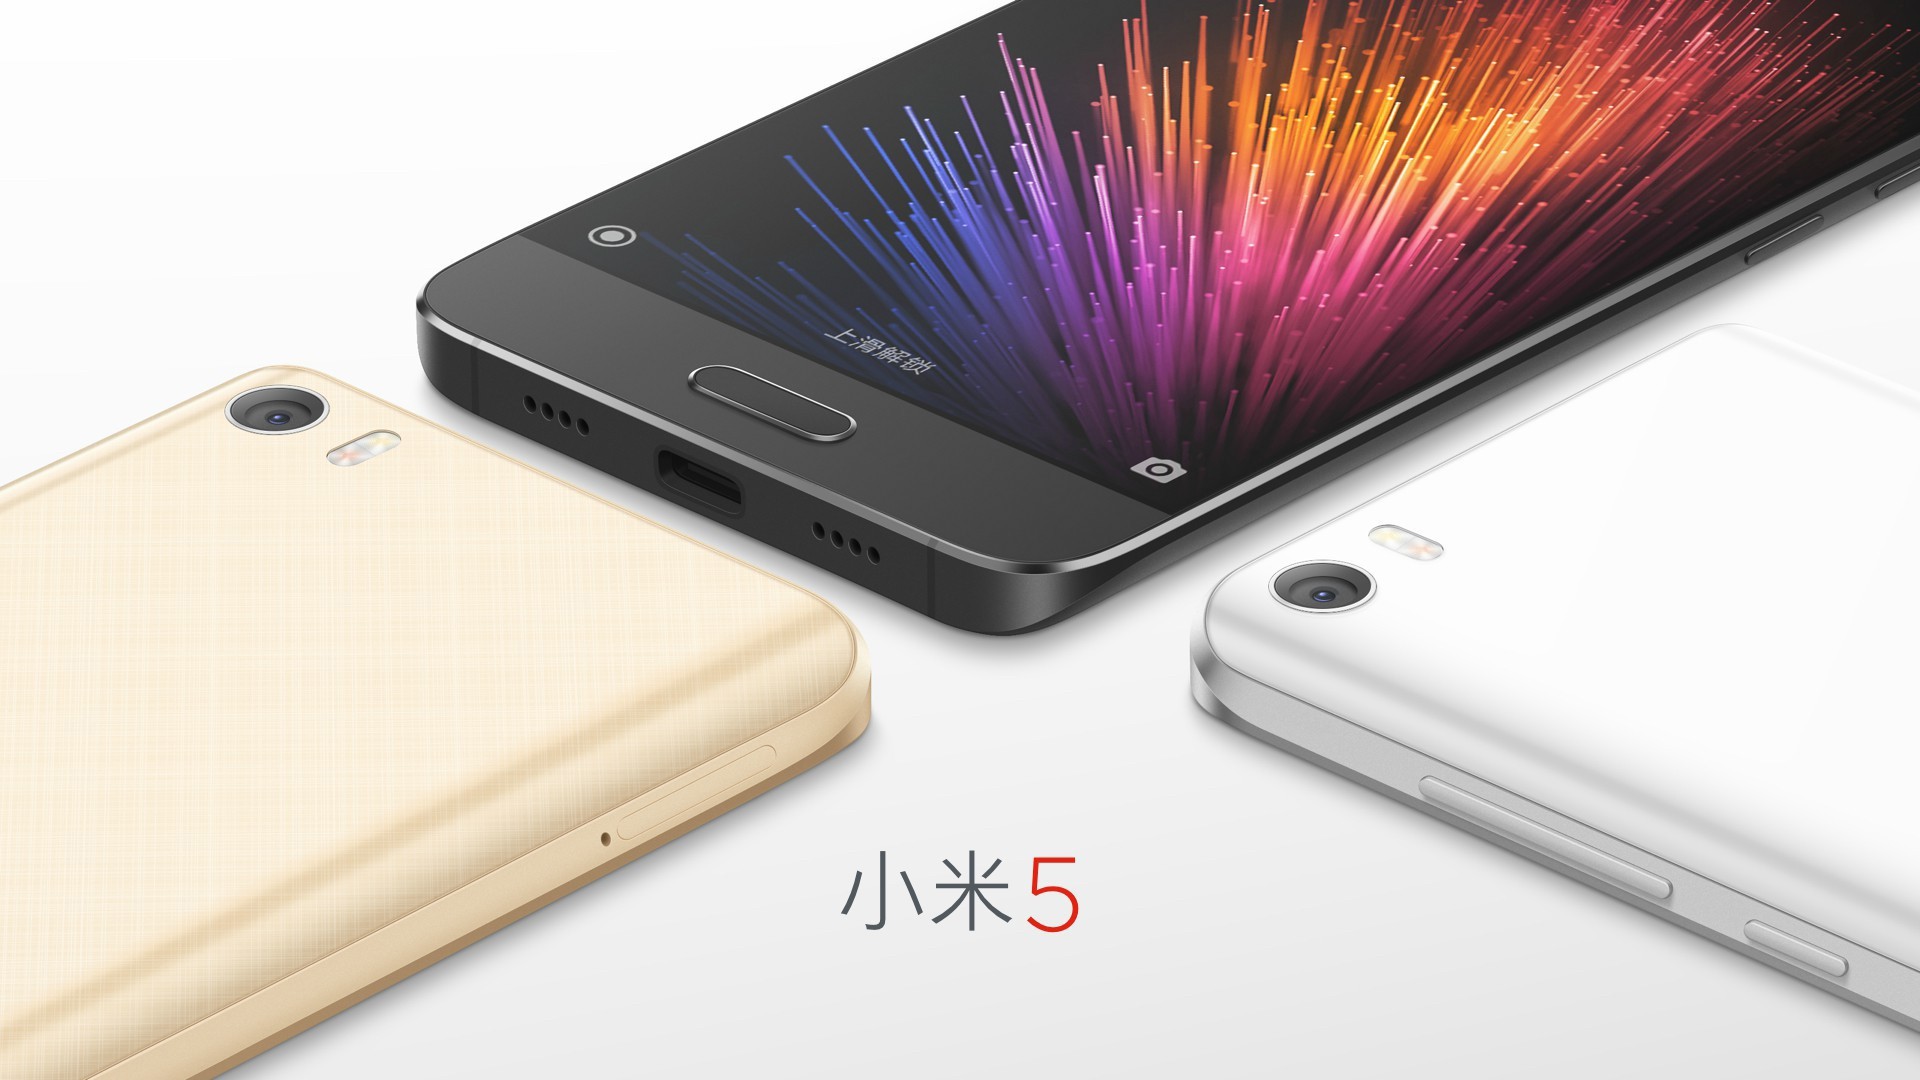 Xiaomi Mi5, se confirman 5.1 mm de grosor